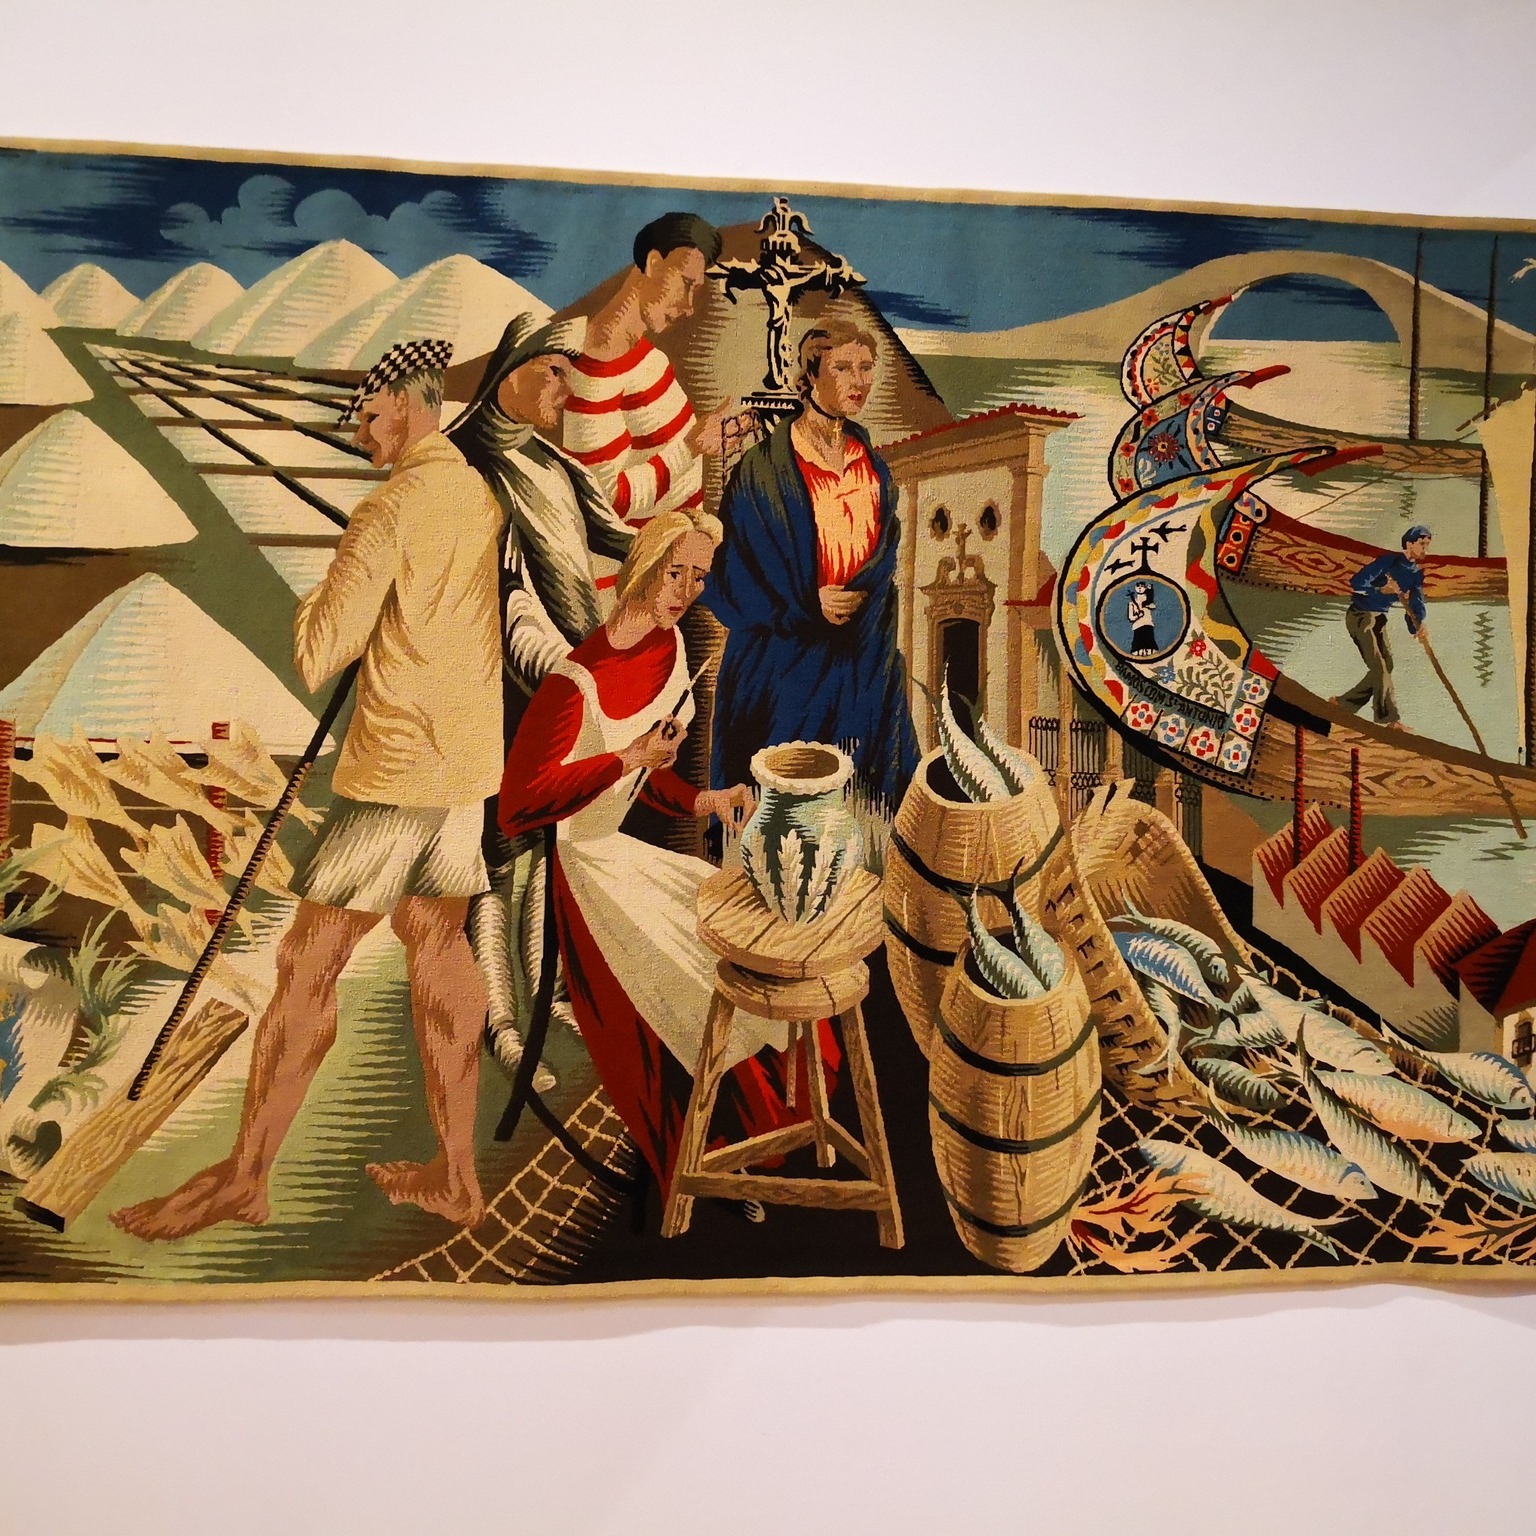 Exposição “João Tavares: A Arte, a Vida e a Memória” inaugurada no Museu da Tapeçaria de Portalegre – Guy Fino